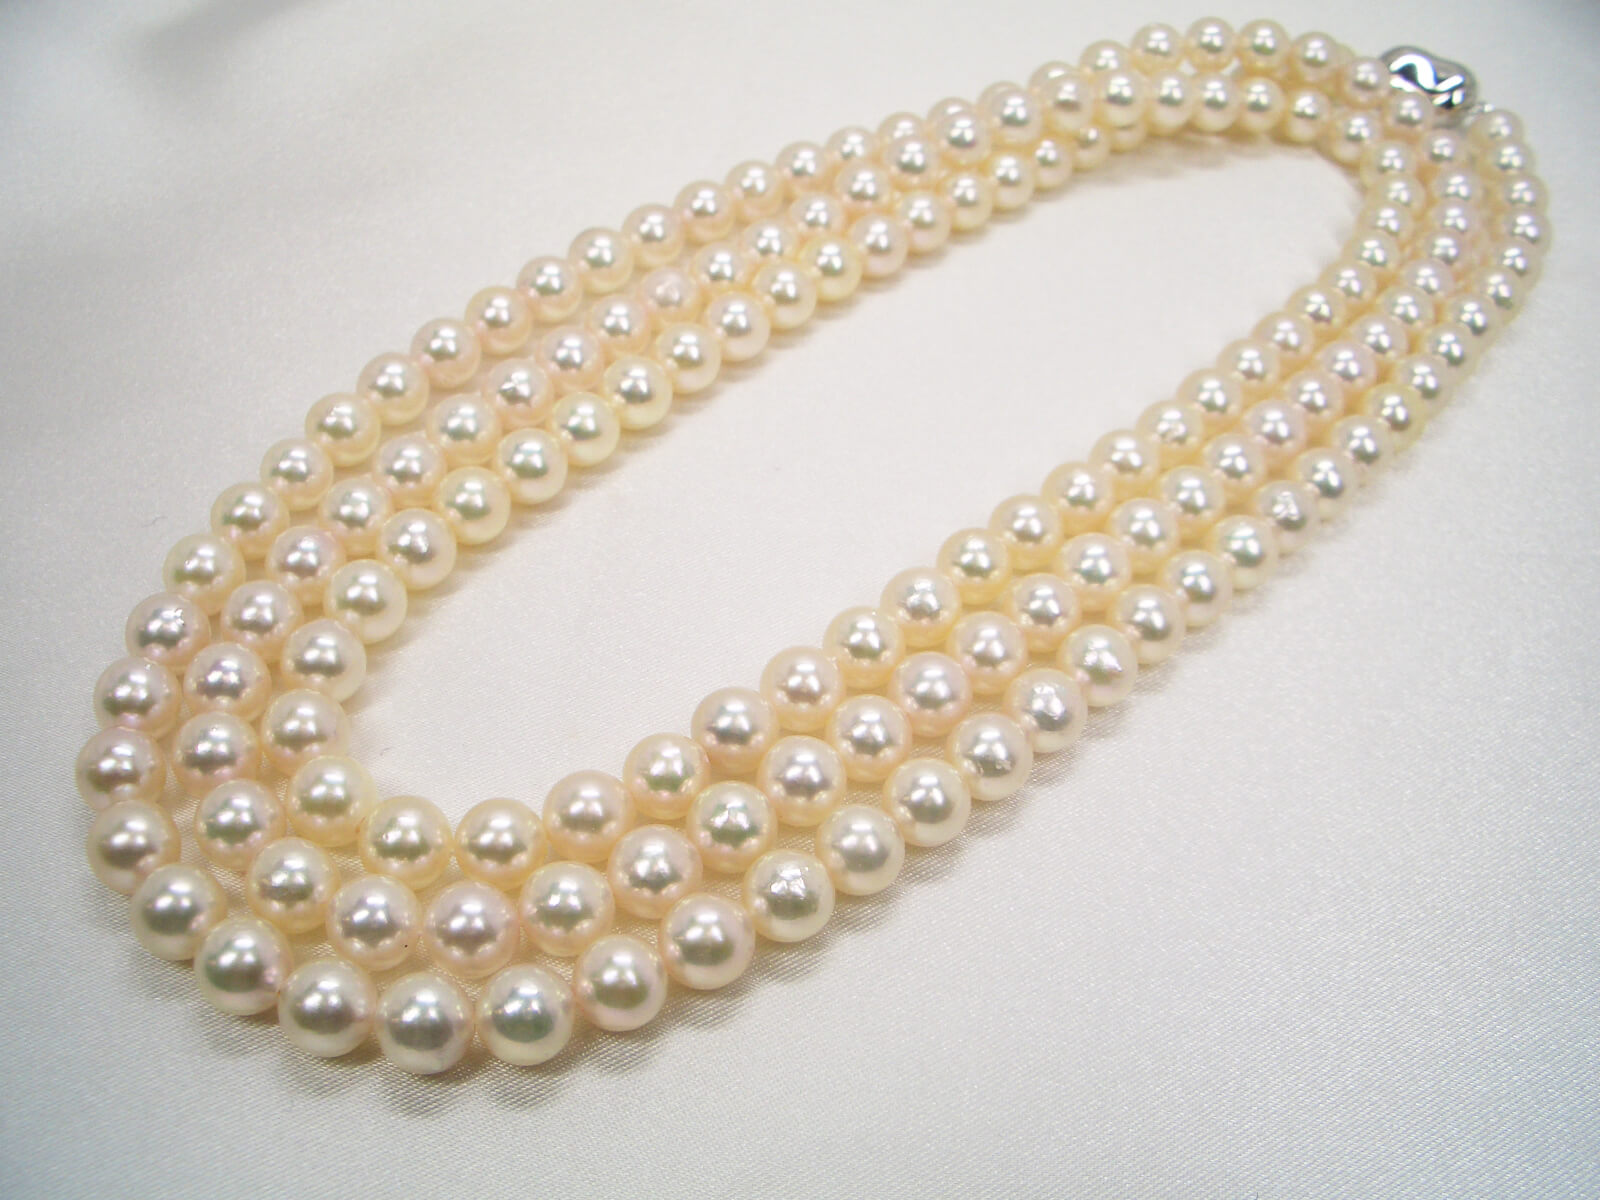 アコヤ真珠 ネックレス 良質真珠 照り良好 真珠総合研究所+spbgp44.ru